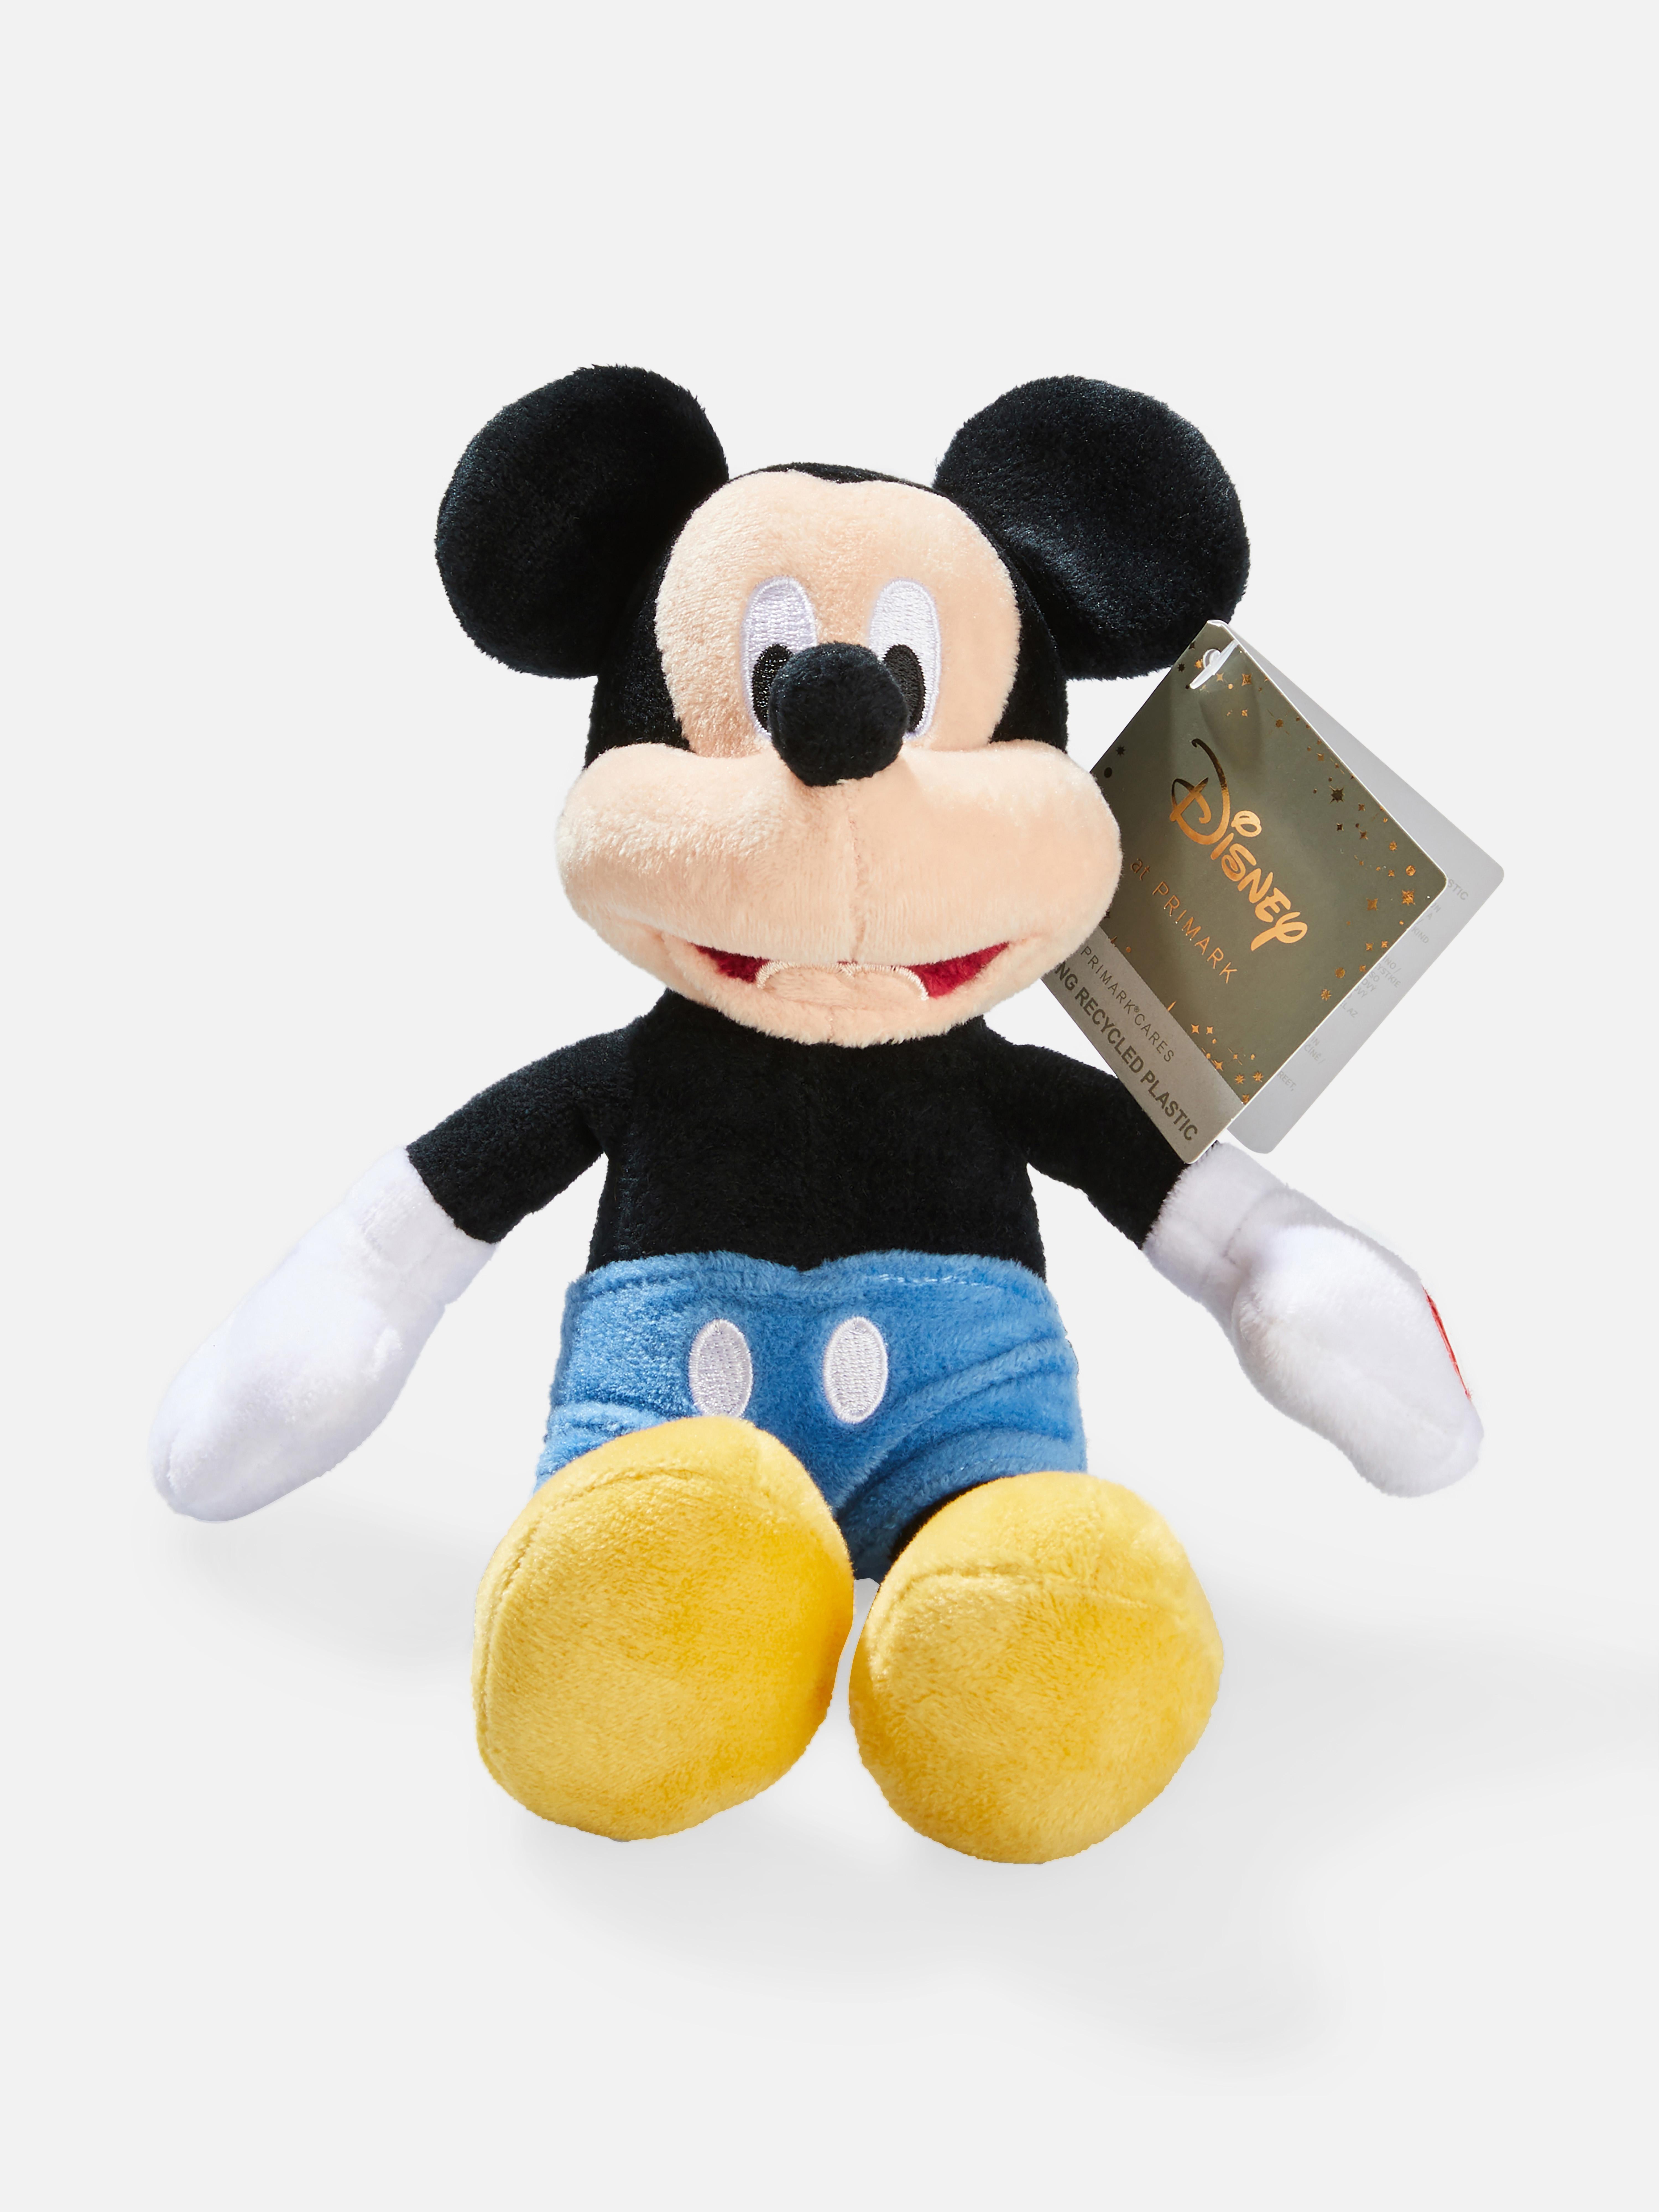 Disney's Mickey Mouse Plush Toy